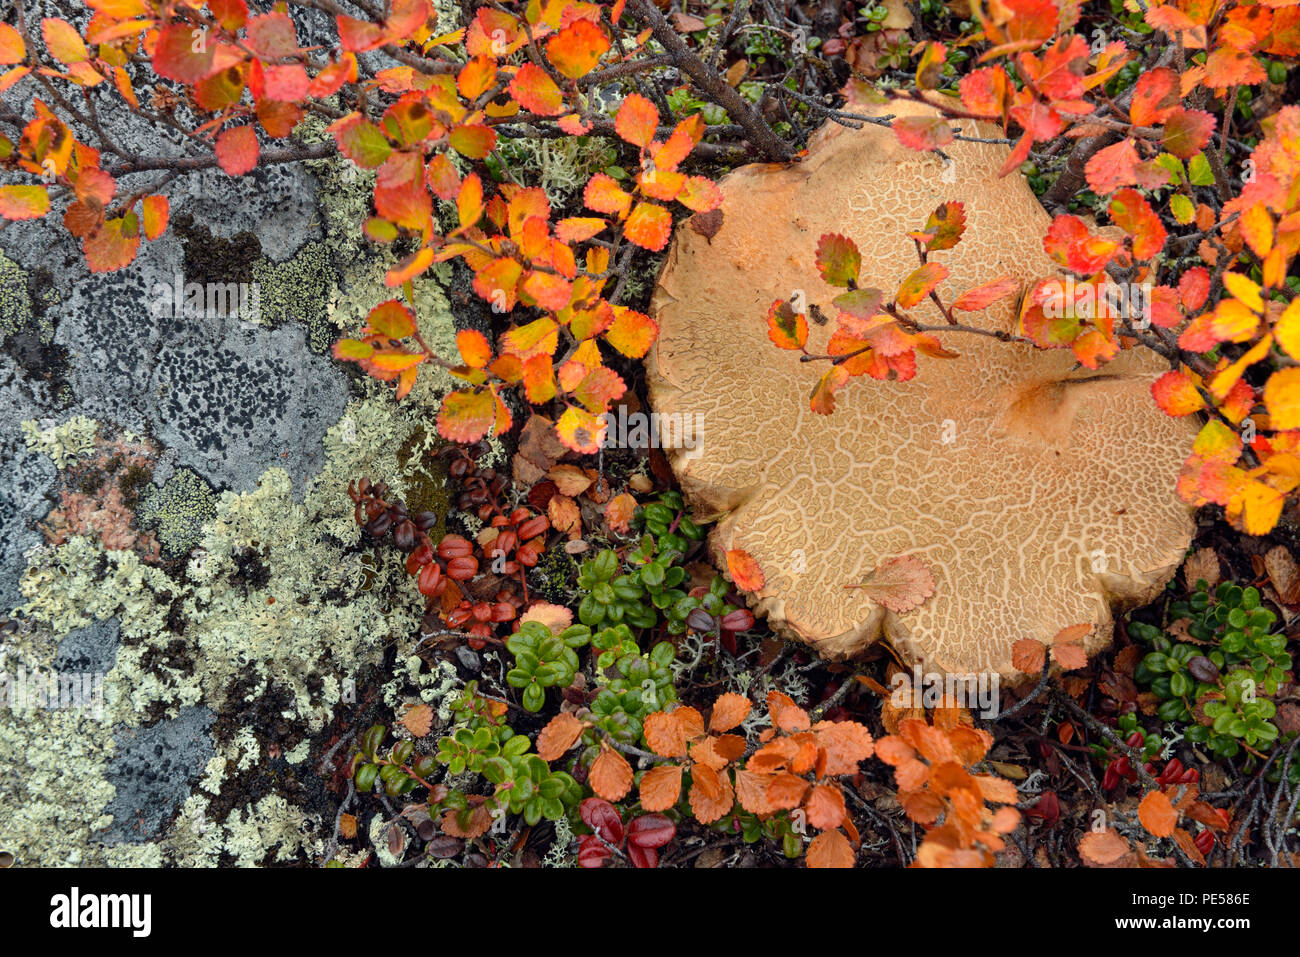 Les plantes de la toundra avec automne couleur- bouleau glanduleux et les champignons, lac Ennadai, Caribou Point, le territoire du Nunavut, Canada Banque D'Images